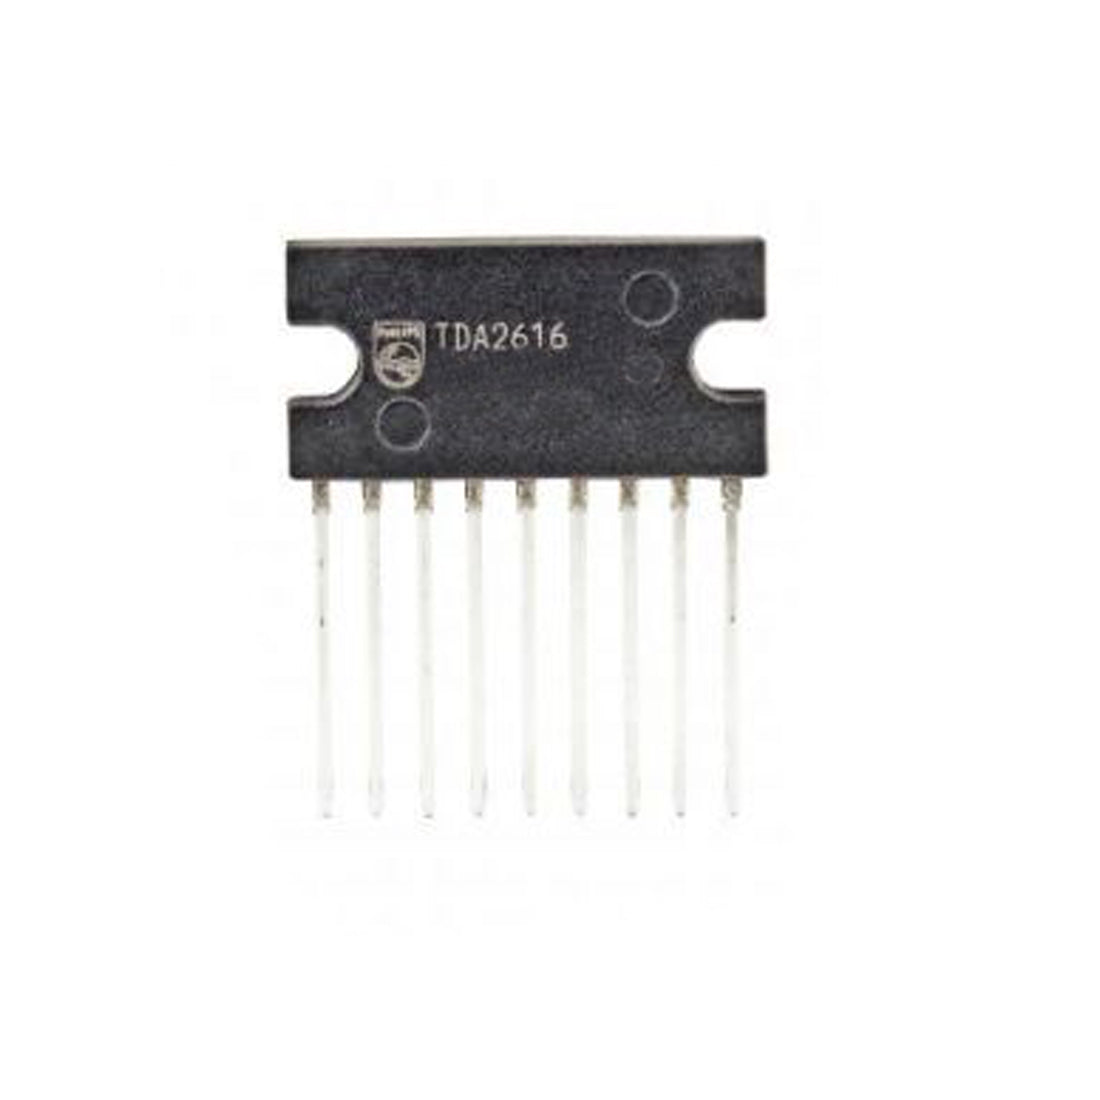 PHILIPS TDA2616 Componente elettronico, circuito integrato, 9 contatti